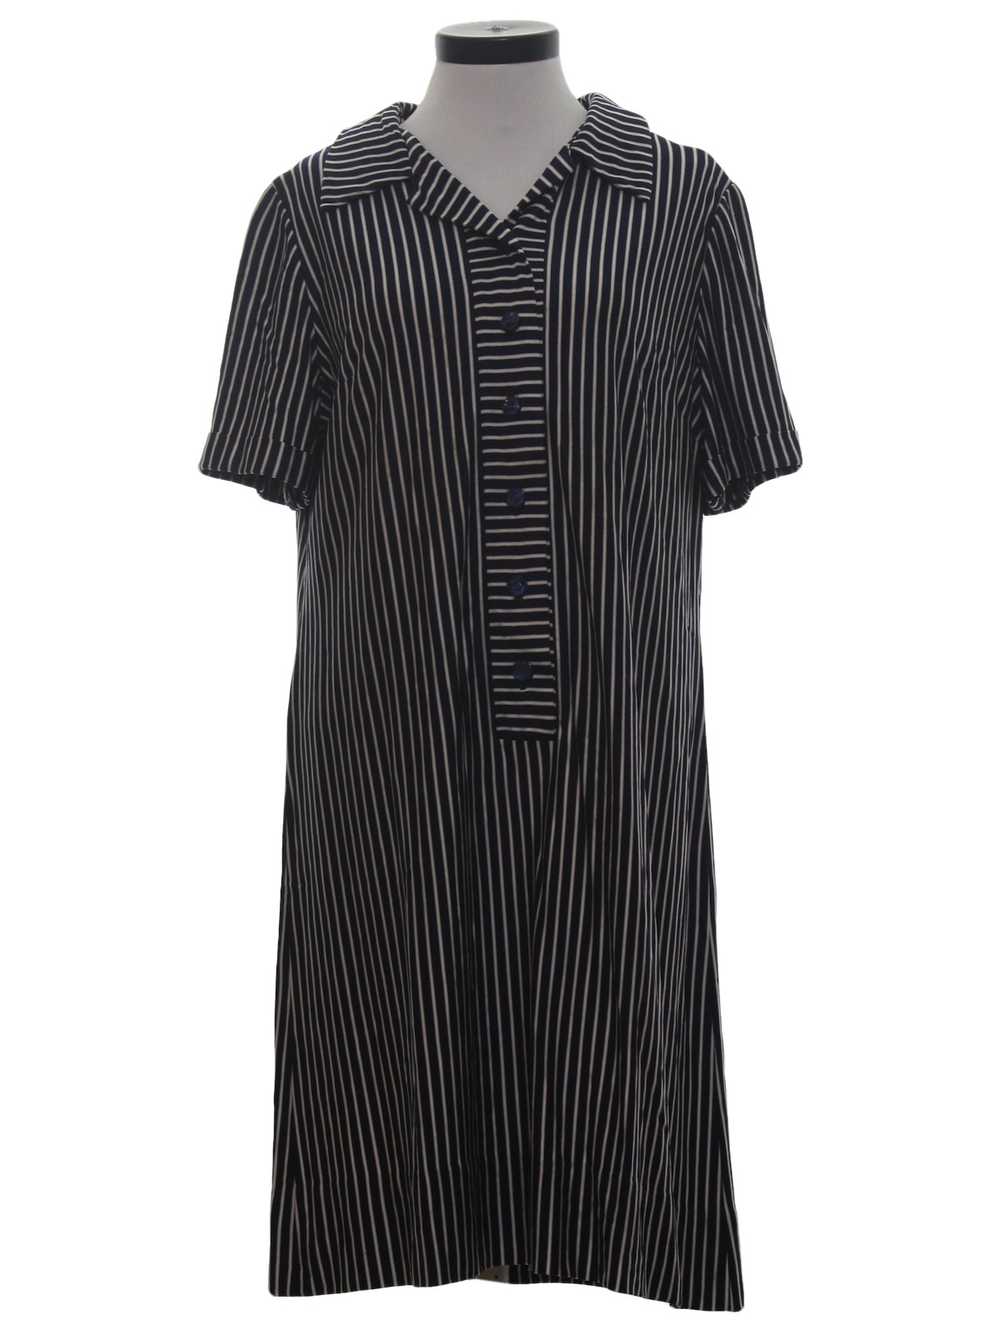 1970's Jack Roberts Shirt Dress - image 1